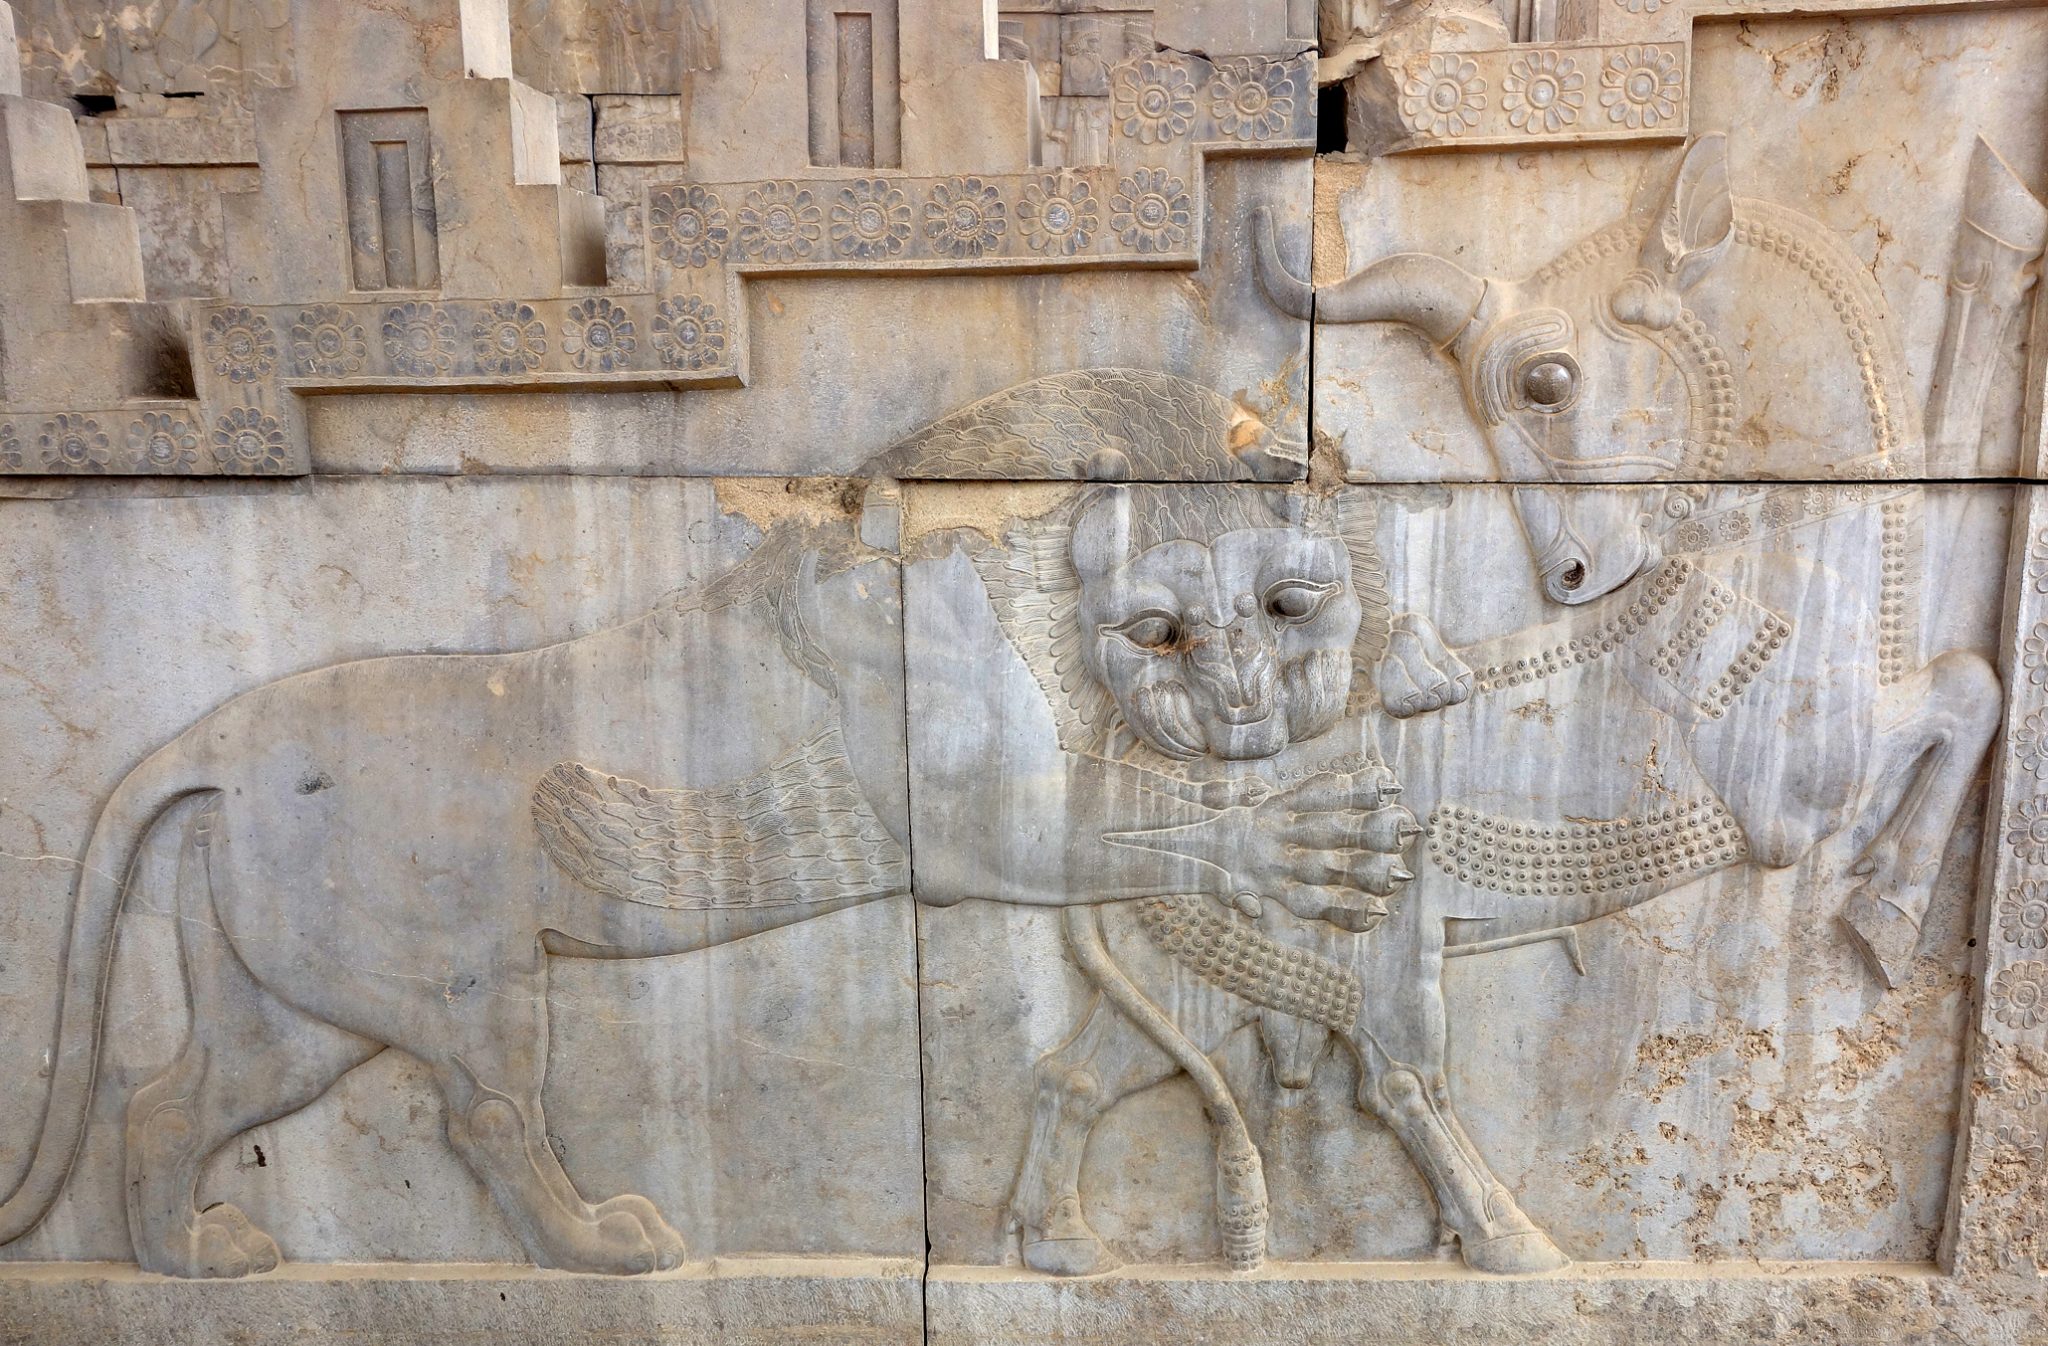 Persépolis, la joya de Persia